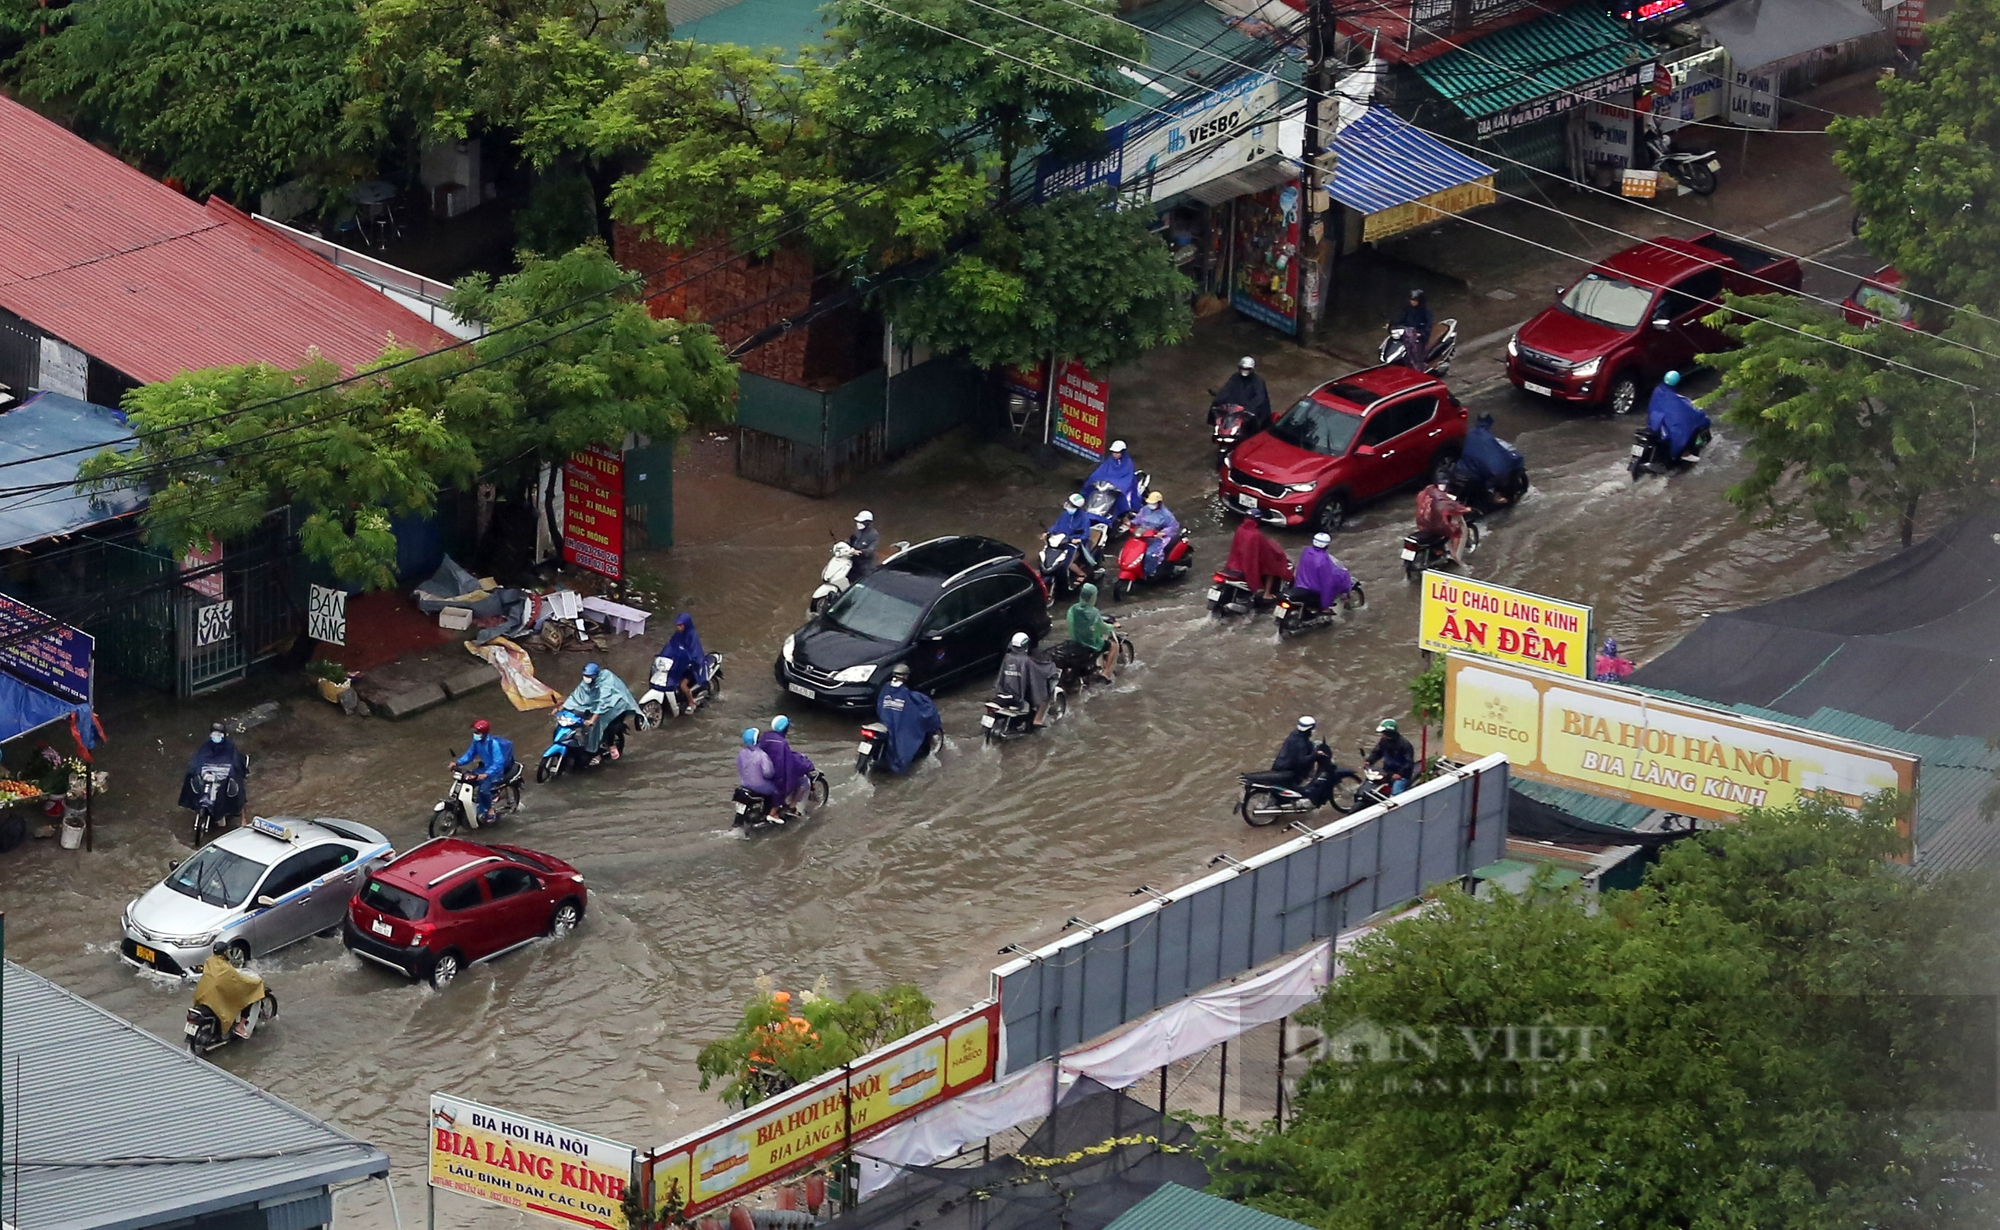 Hà Nội mưa lớn trong đêm, nhiều tuyến đường ngập nặng và ùn tắc - Ảnh 2.